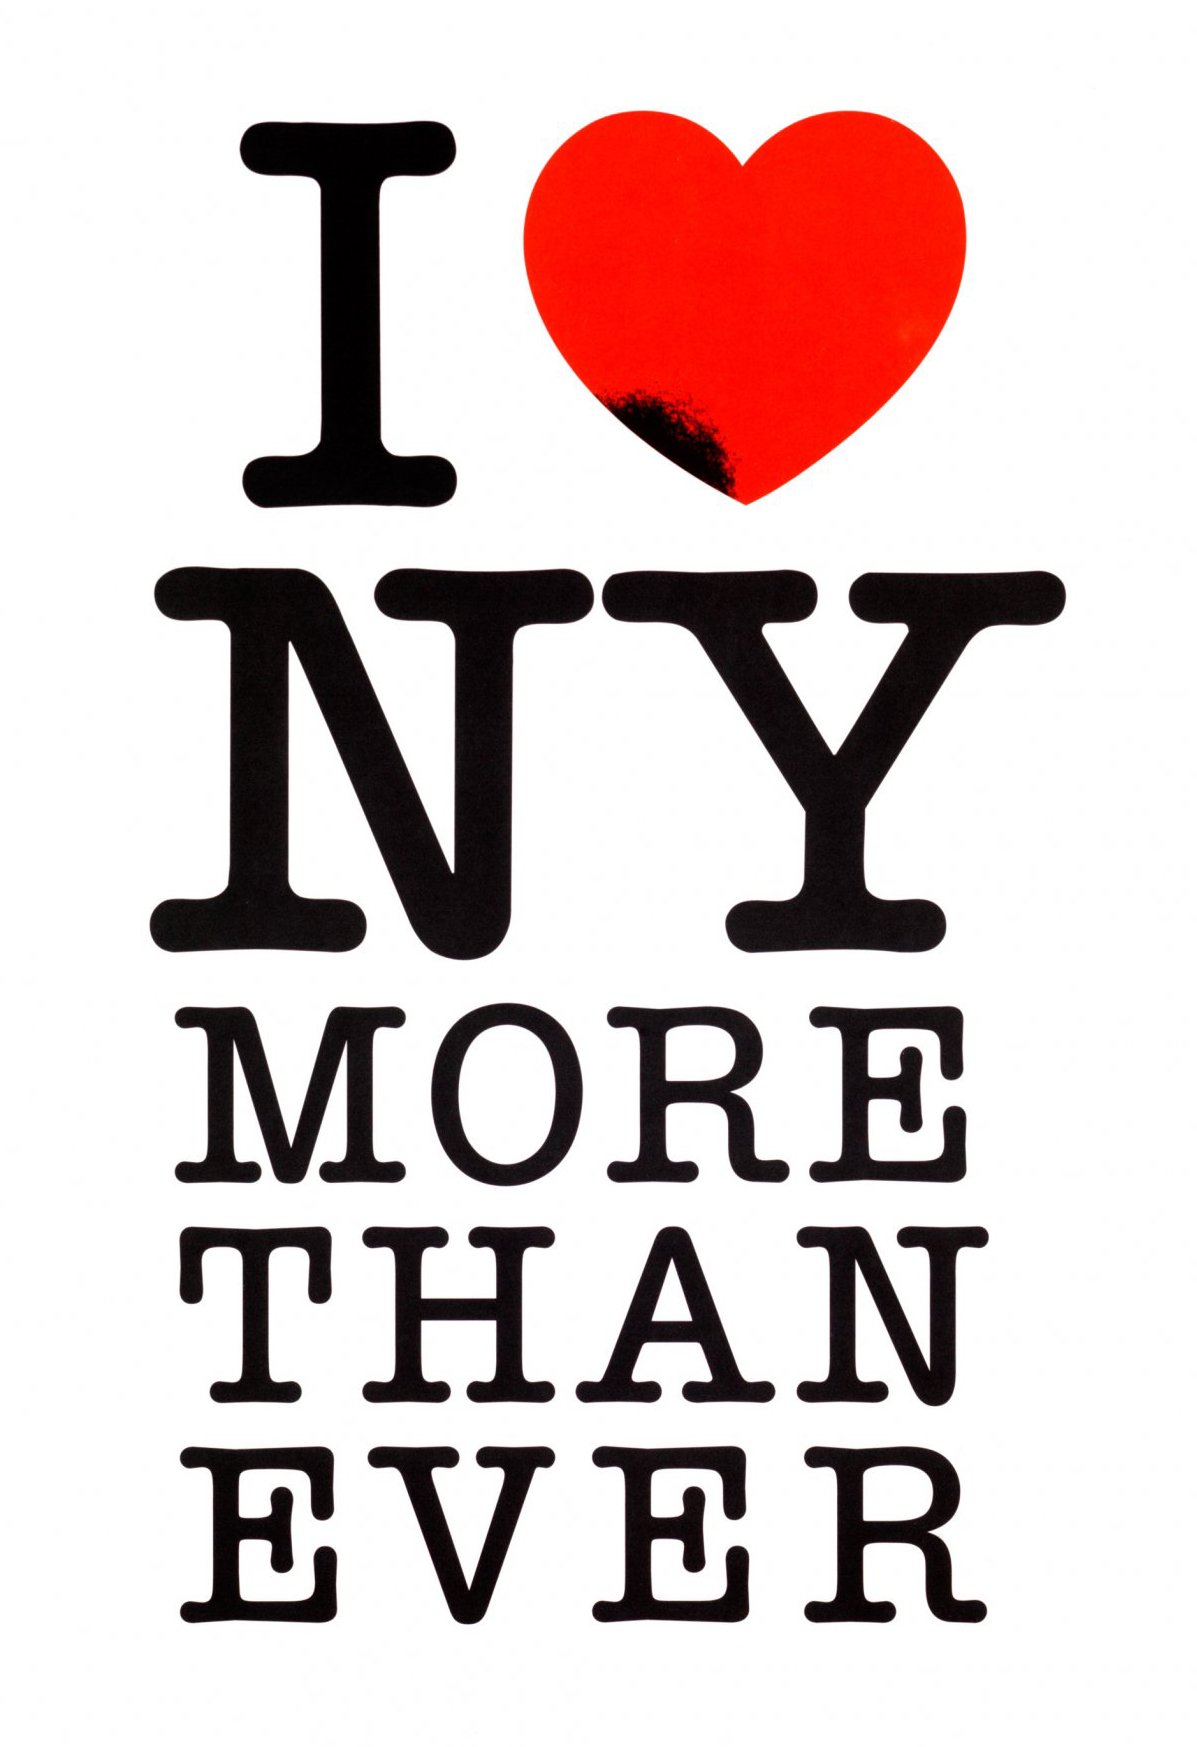 Preminuo čuveni dizajner koji je stvorio logotip "I love NY" .